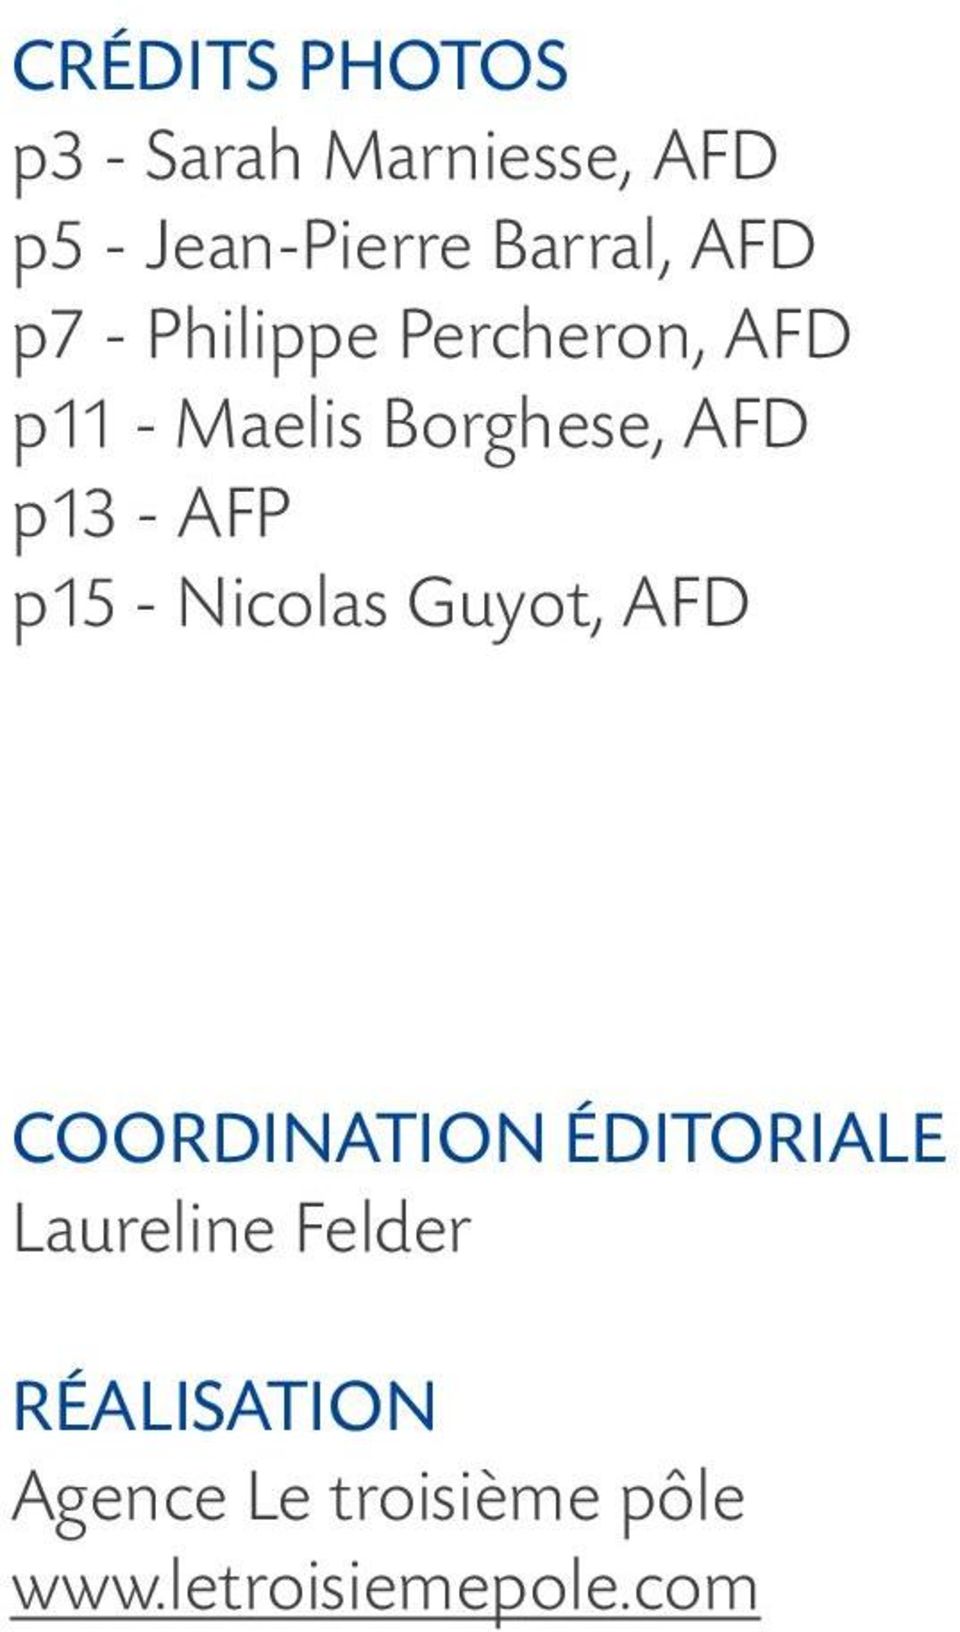 AFP p15 - Nicolas Guyot, AFD Coordination éditoriale Laureline